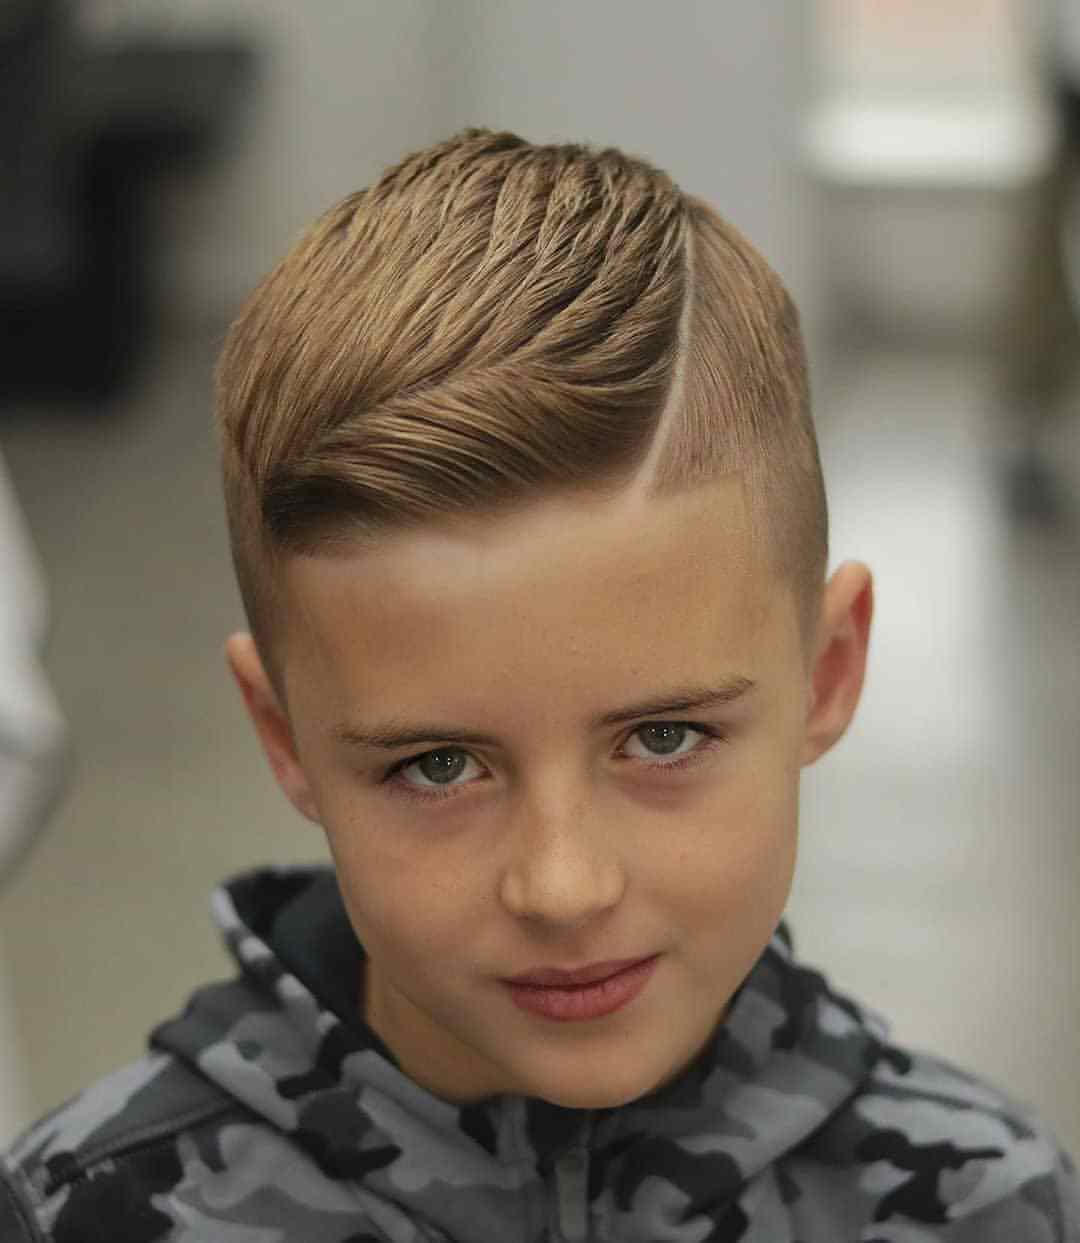 男孩可以选择这种纹理烫发来增加整个发型的蓬松度,搭配栗棕色的染发